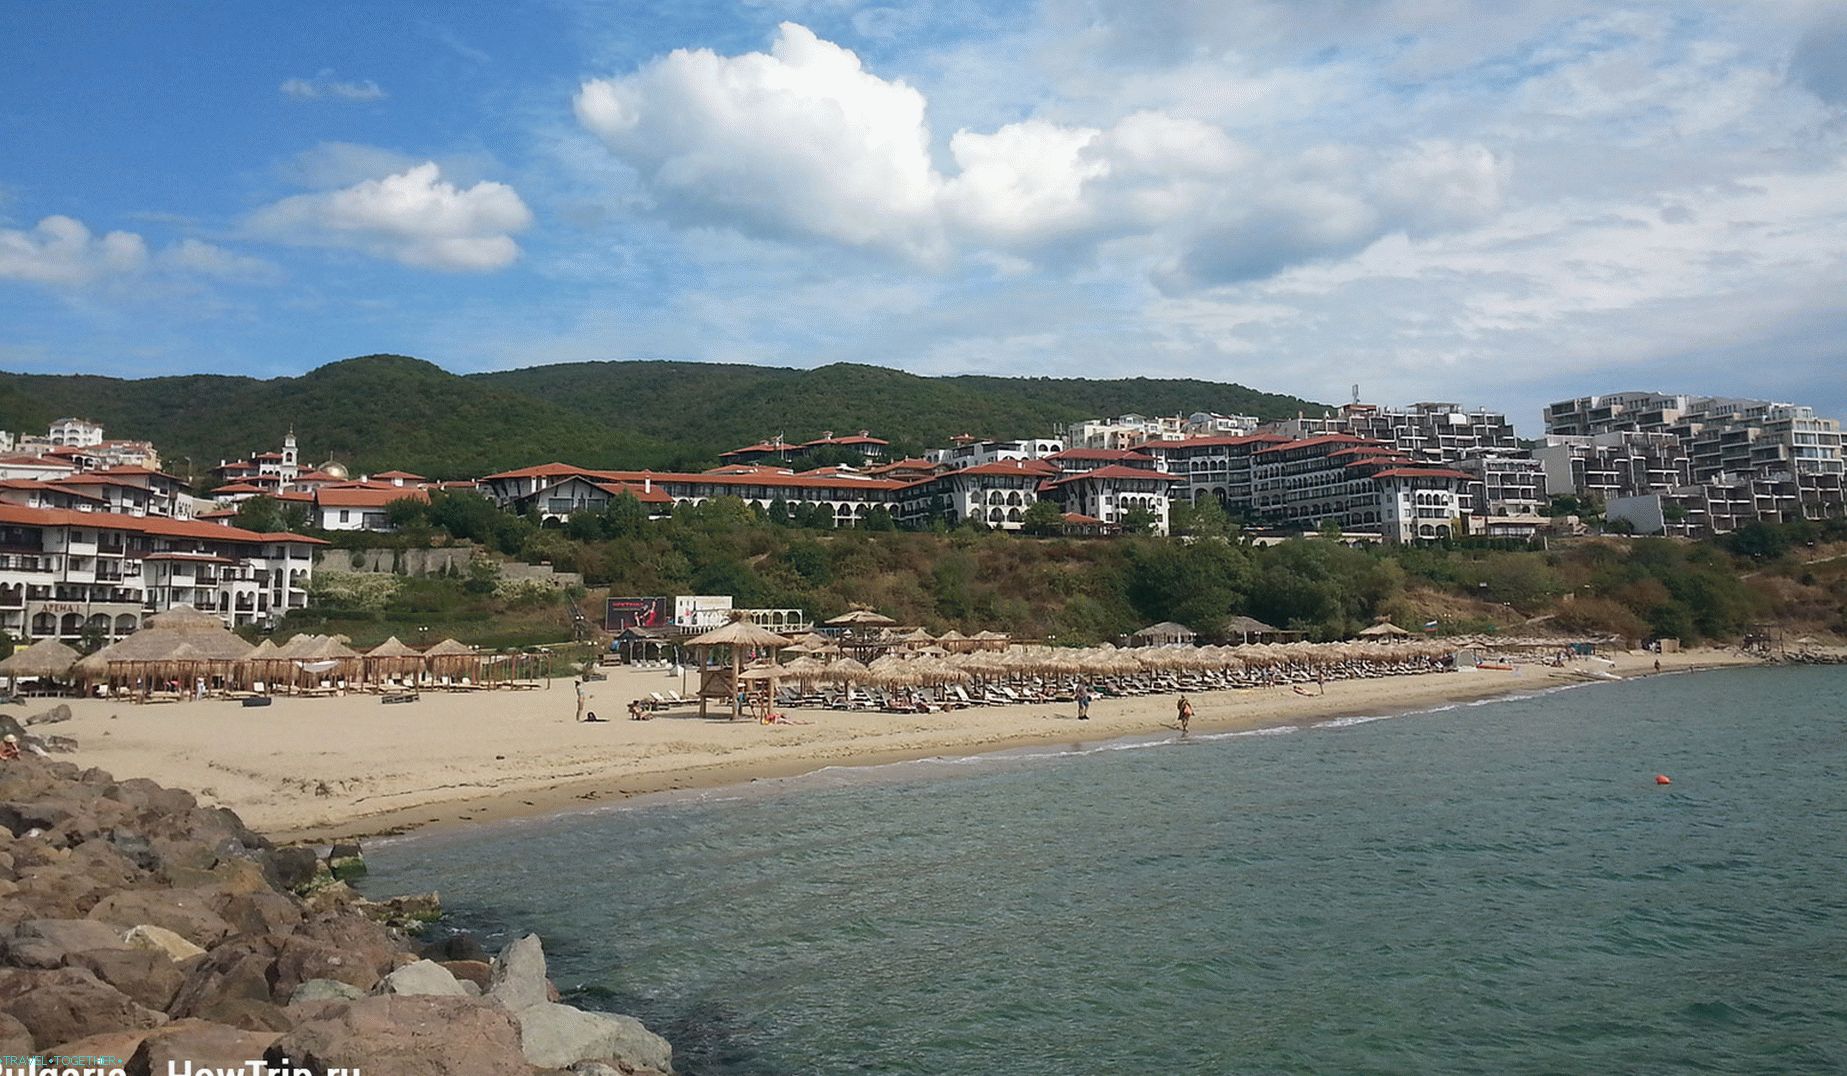 Pláž a hotely u moře v Bulharsku